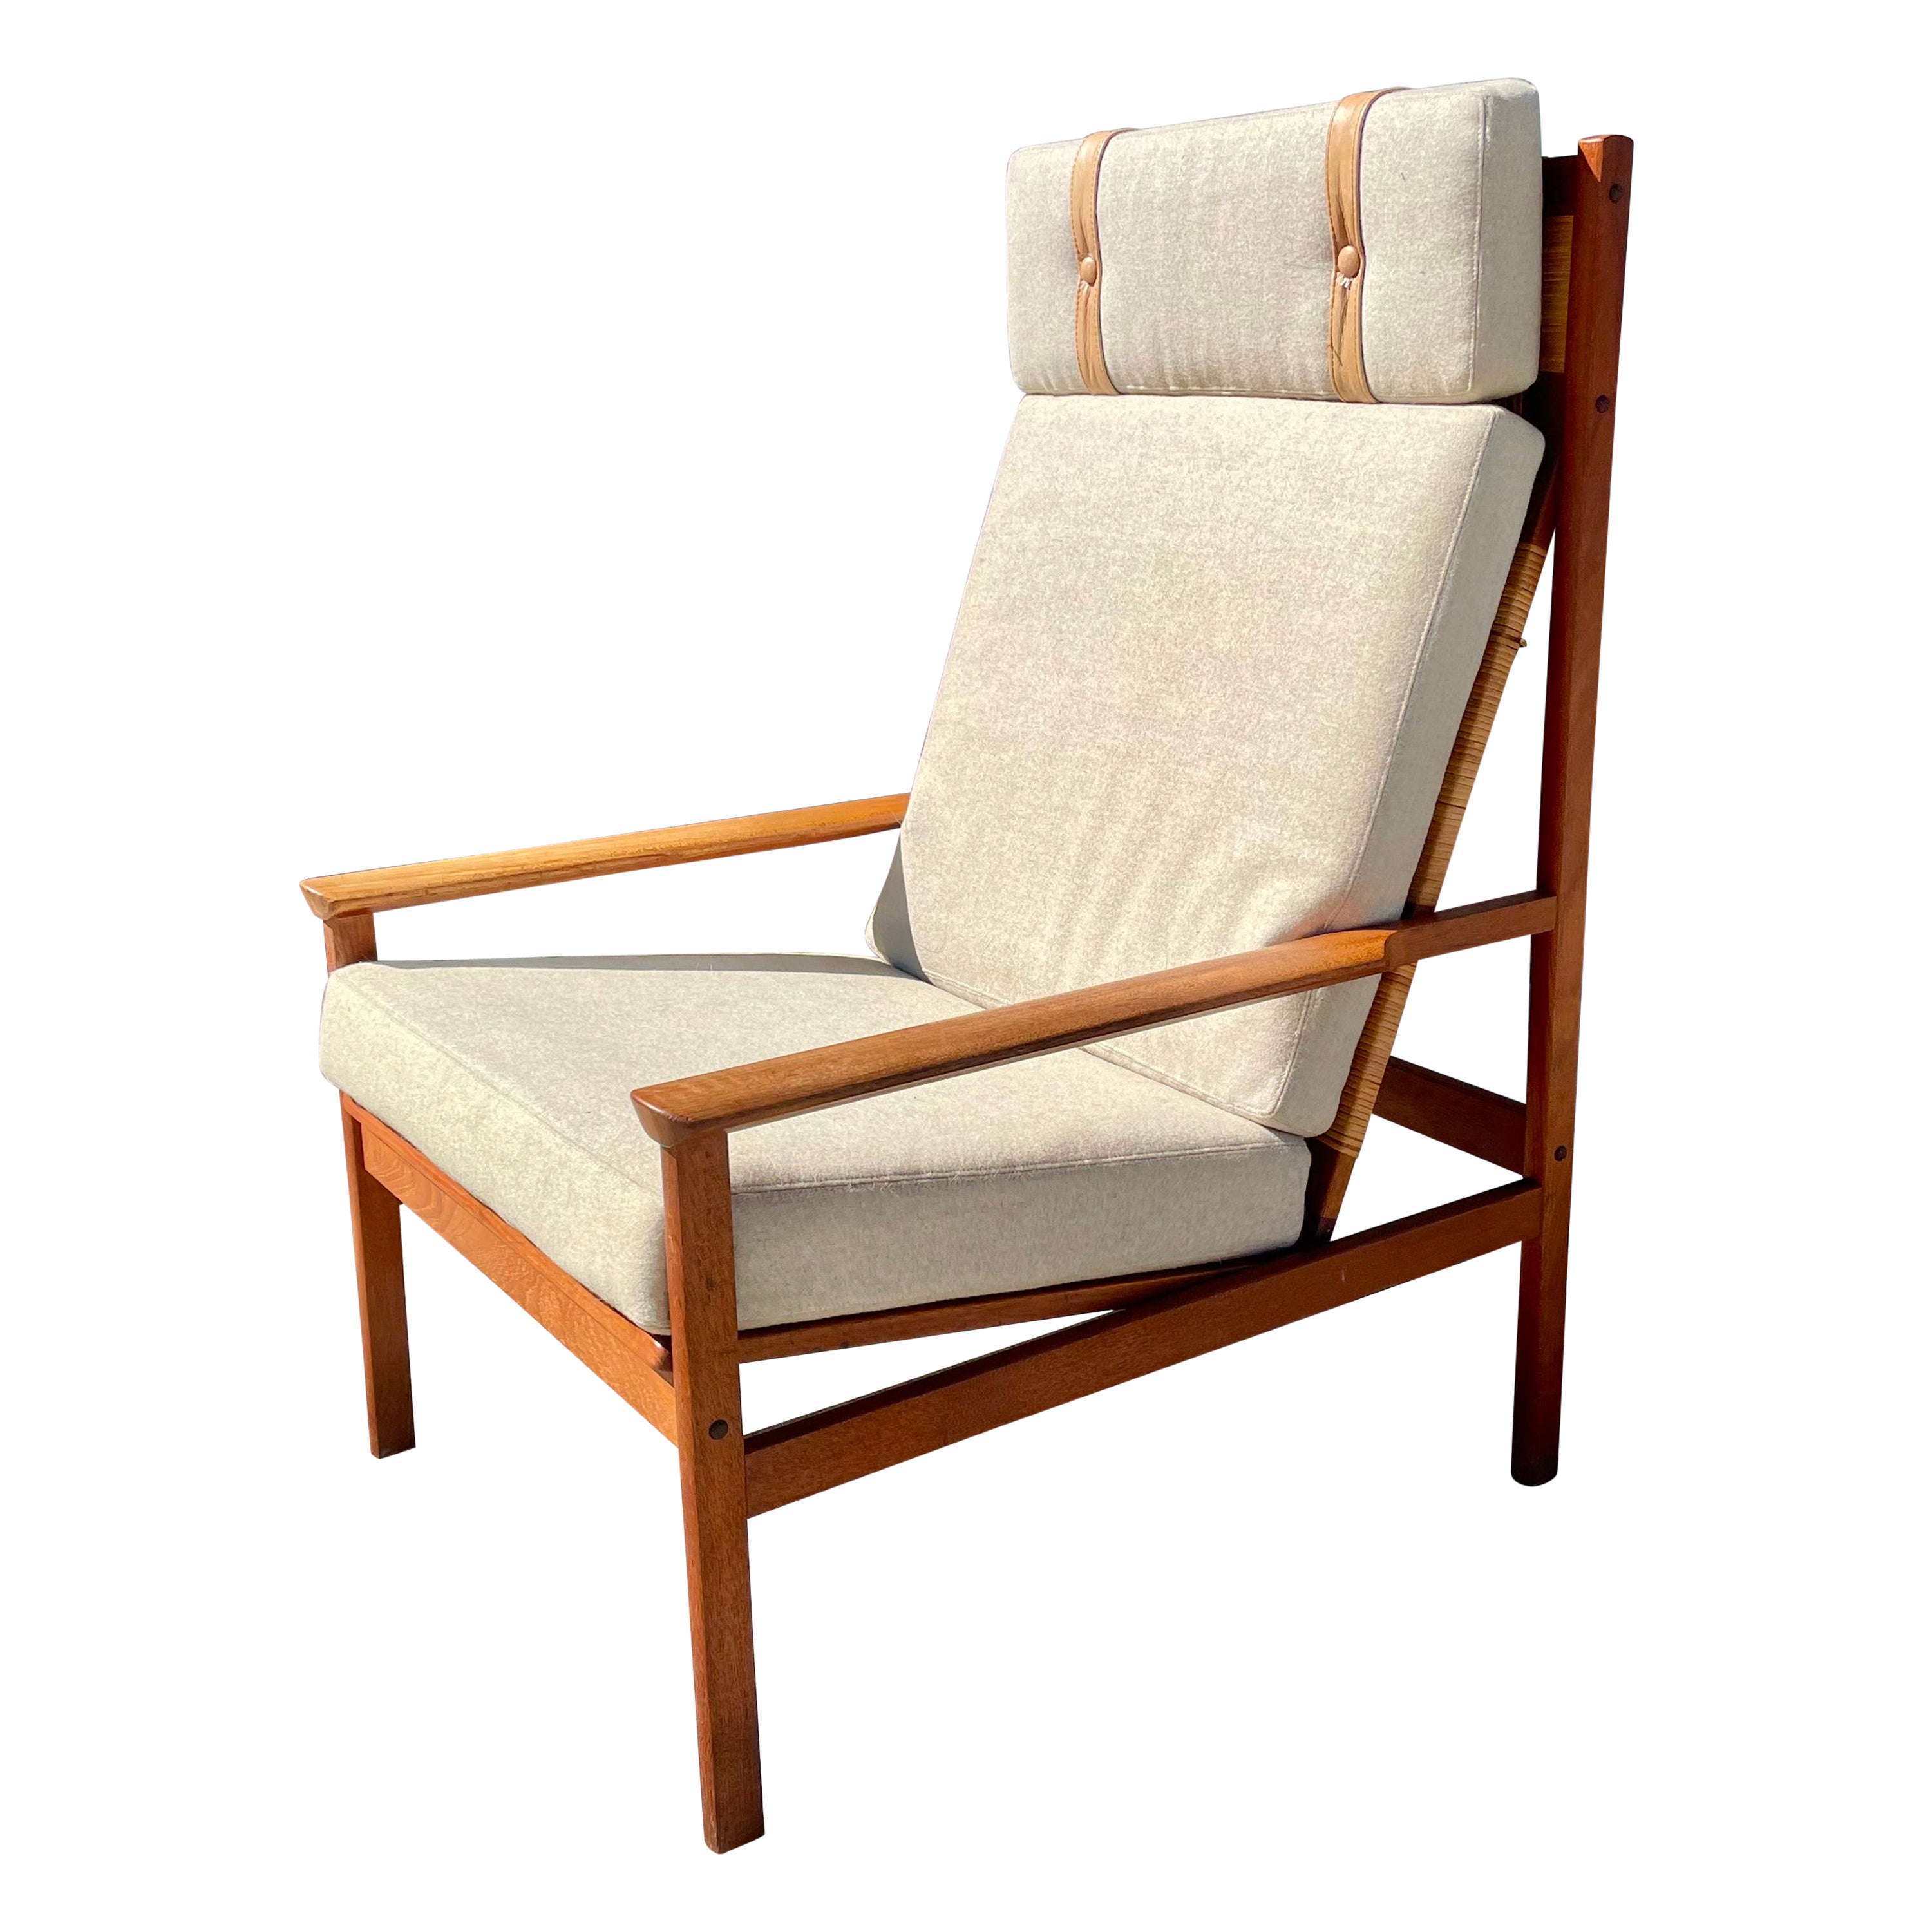 1960s Danish Modern Teak Lounge Chair by Hans Olsen for Juul Kristensen For Sale